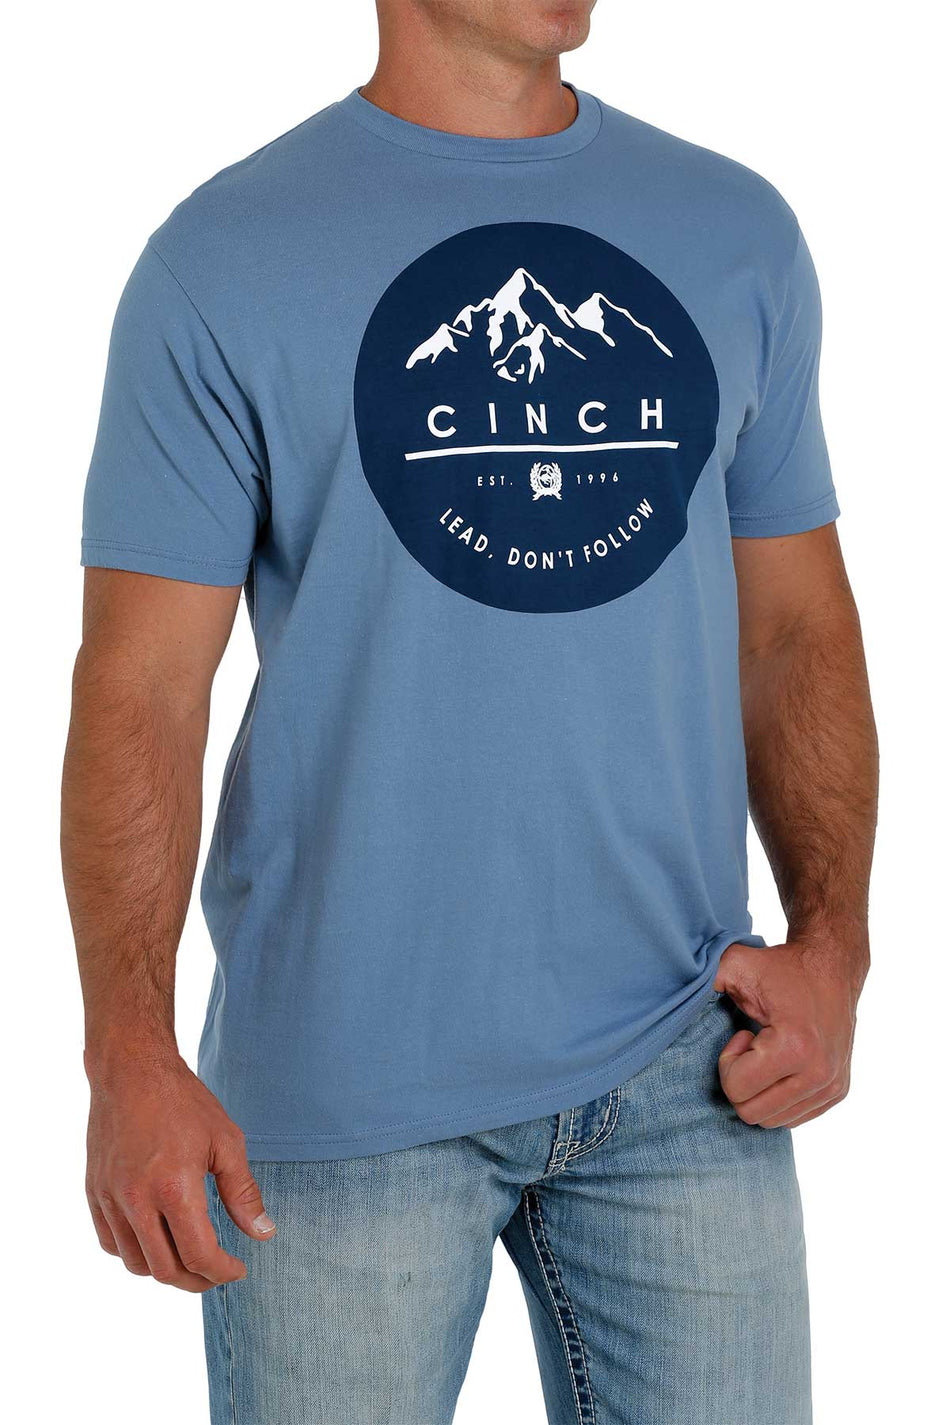 Cinch - Mens Aaron T-shirt